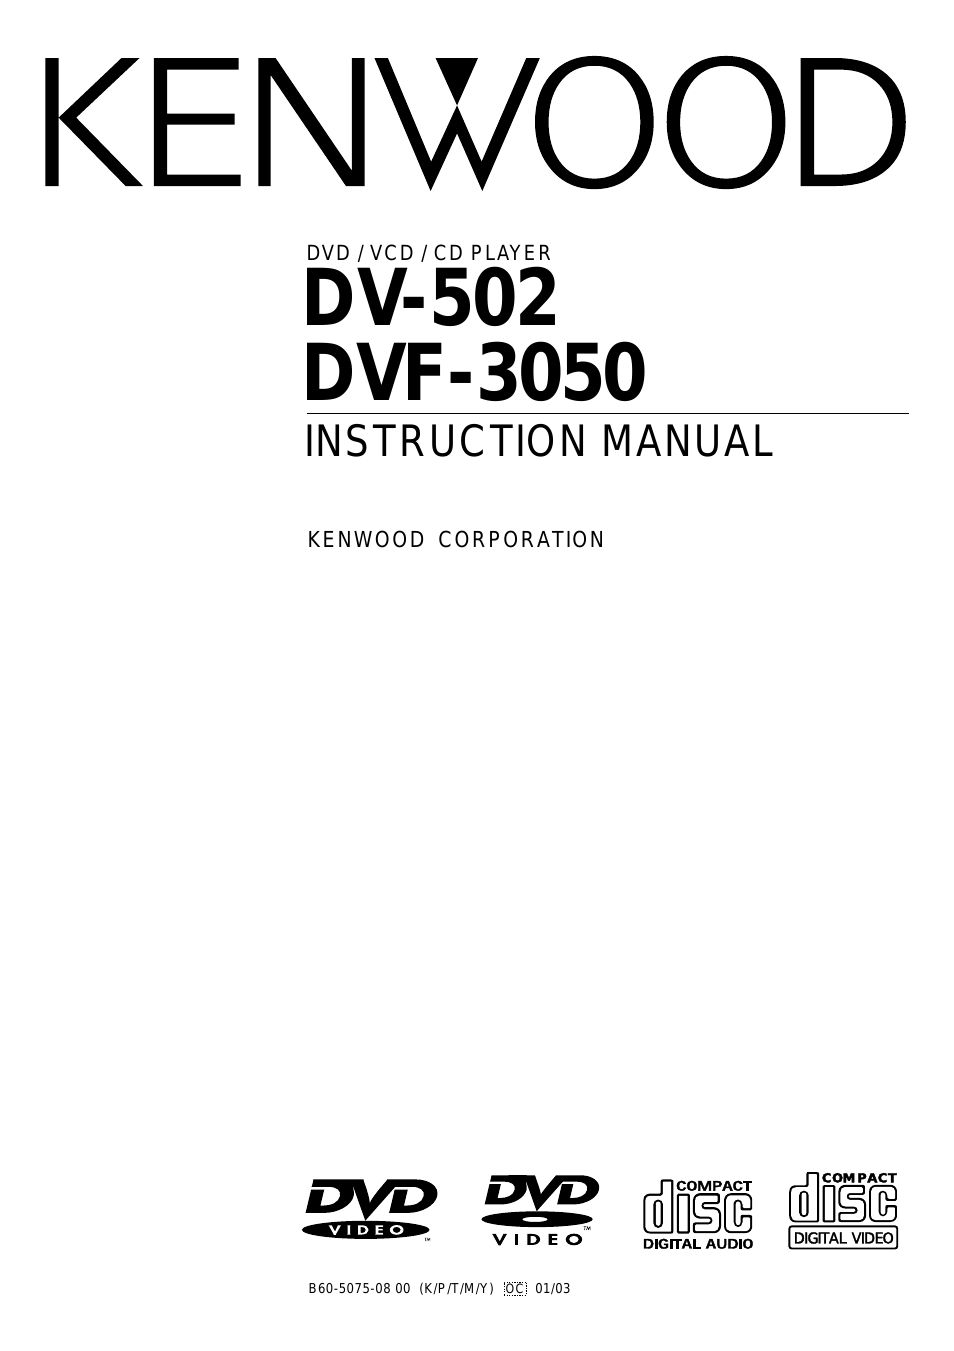 DVF-3530